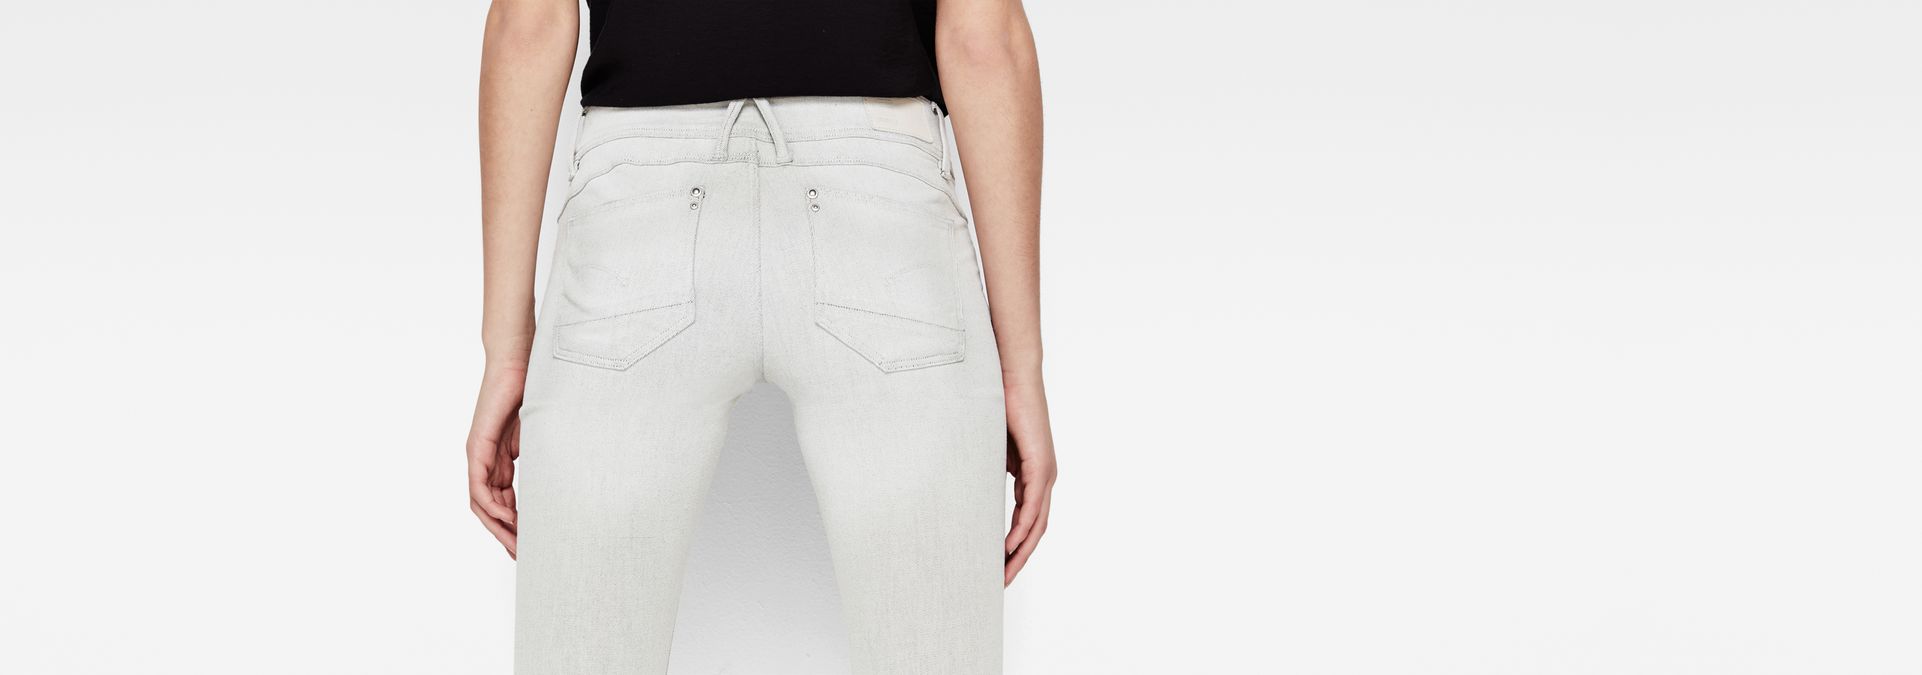 custom white jeans